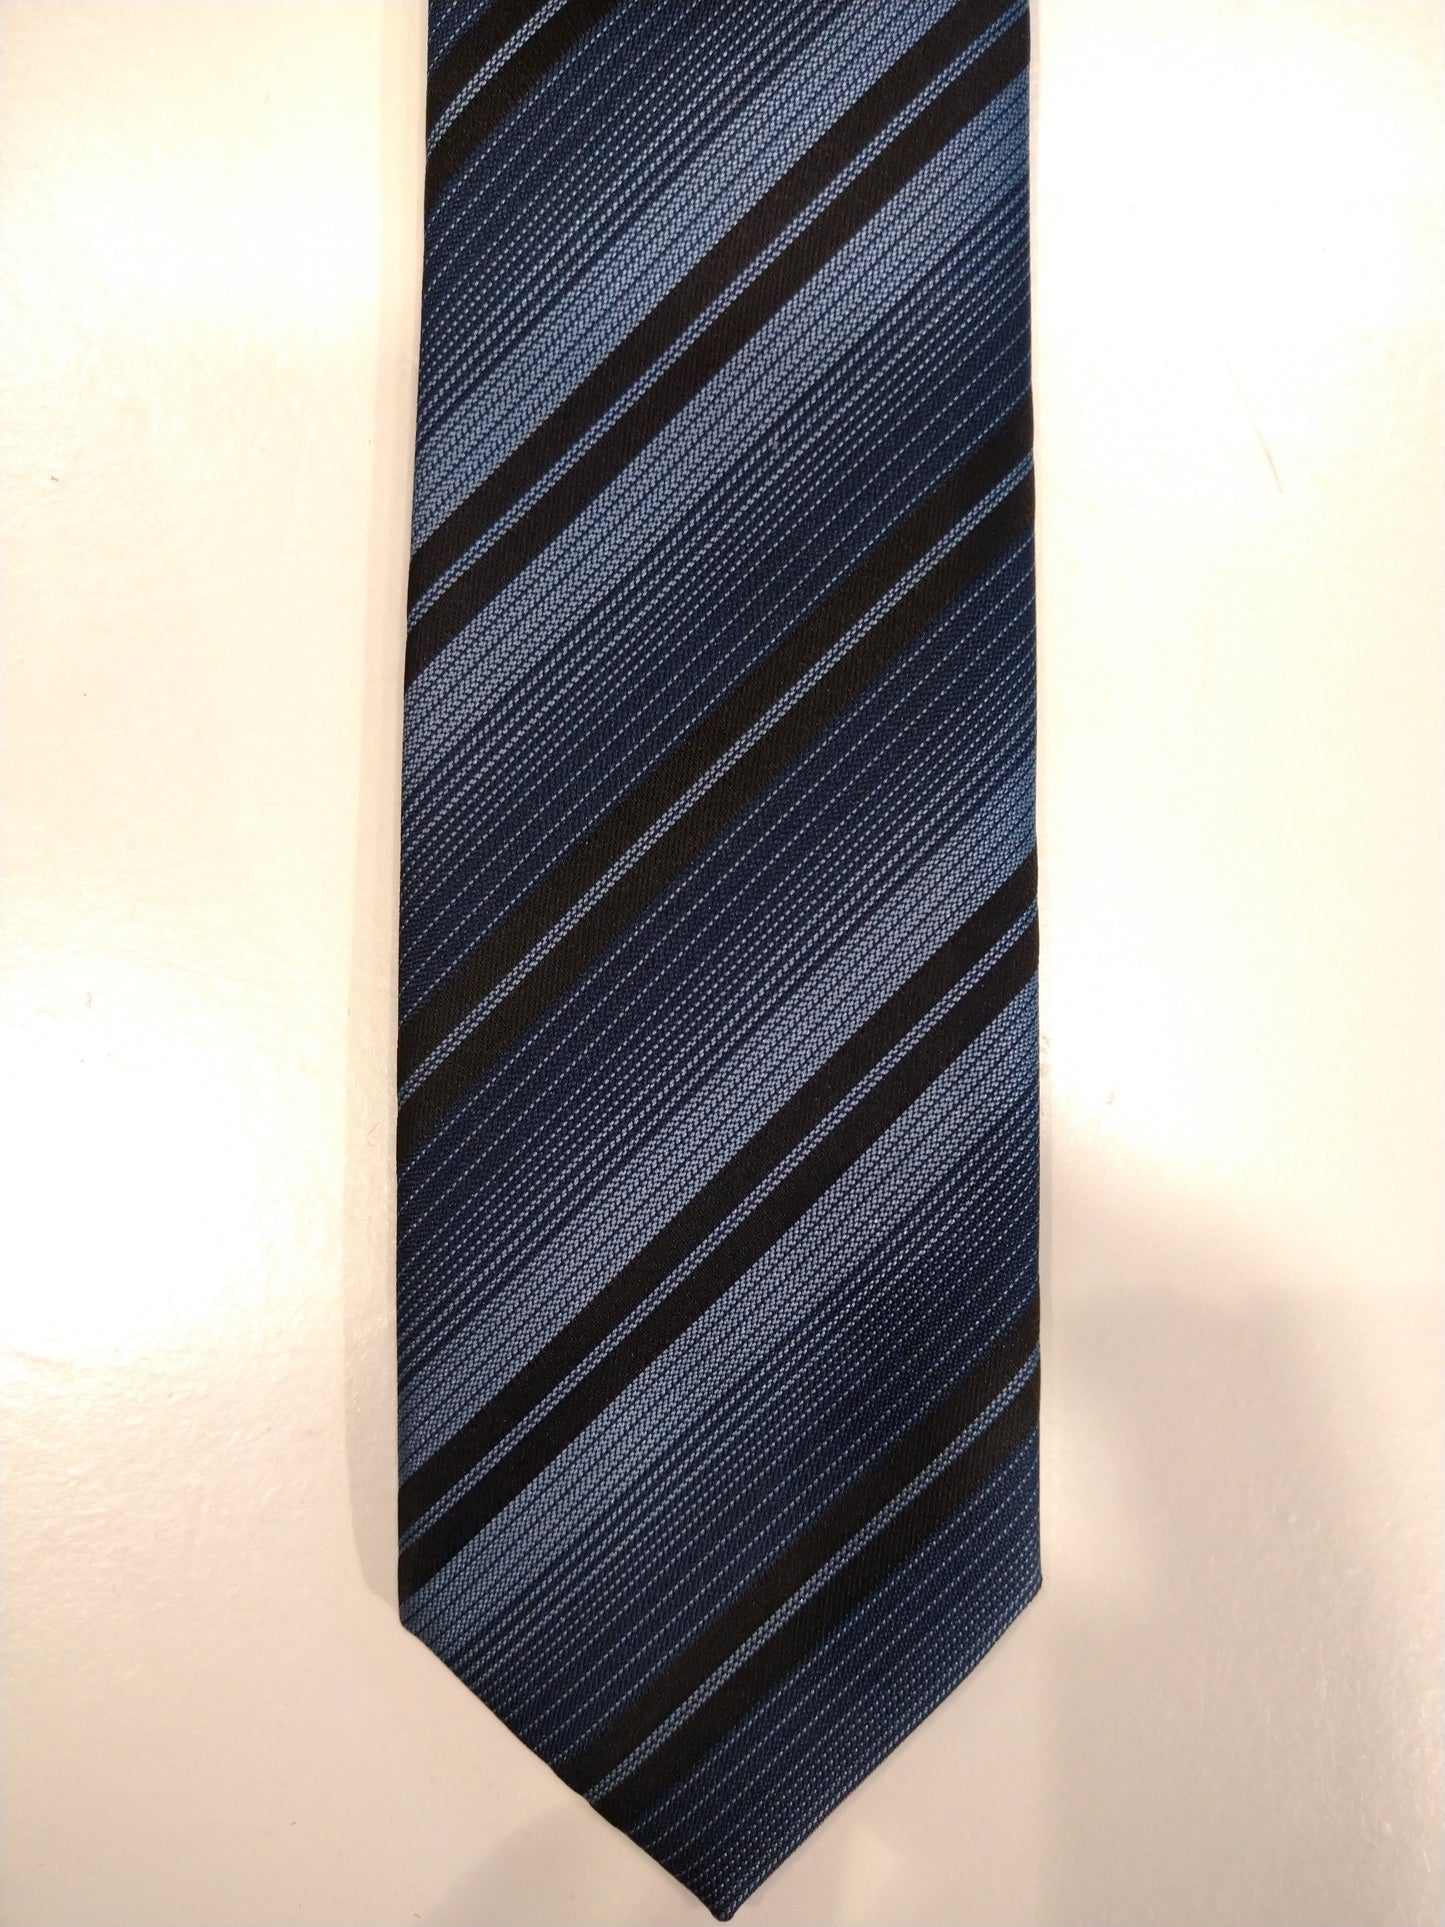 Cravatta in poliestere stretta con stato di legno di cedro. Strisce nero blu.